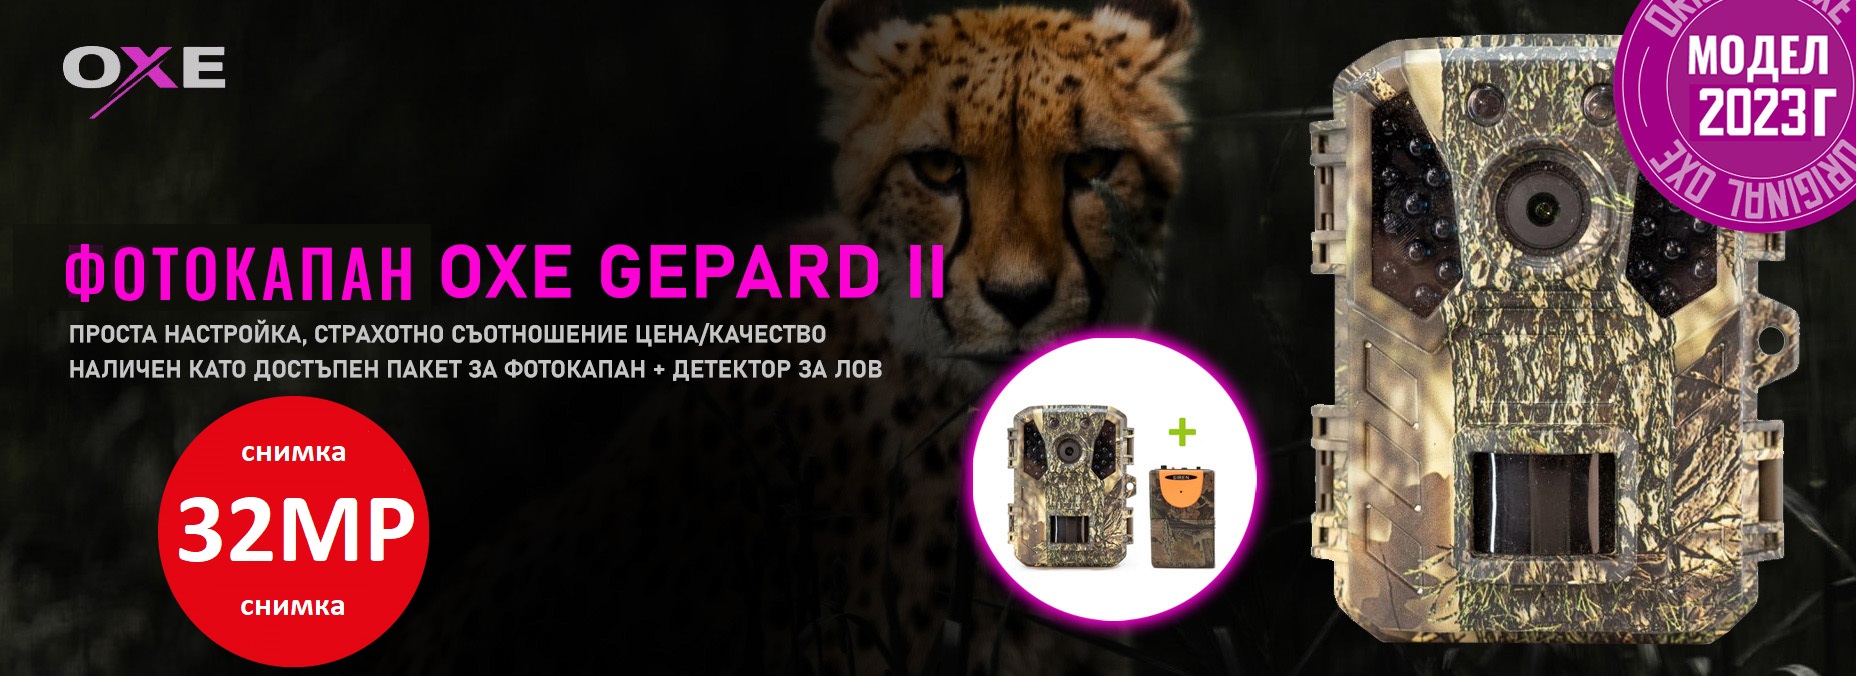 OXE Gepard II